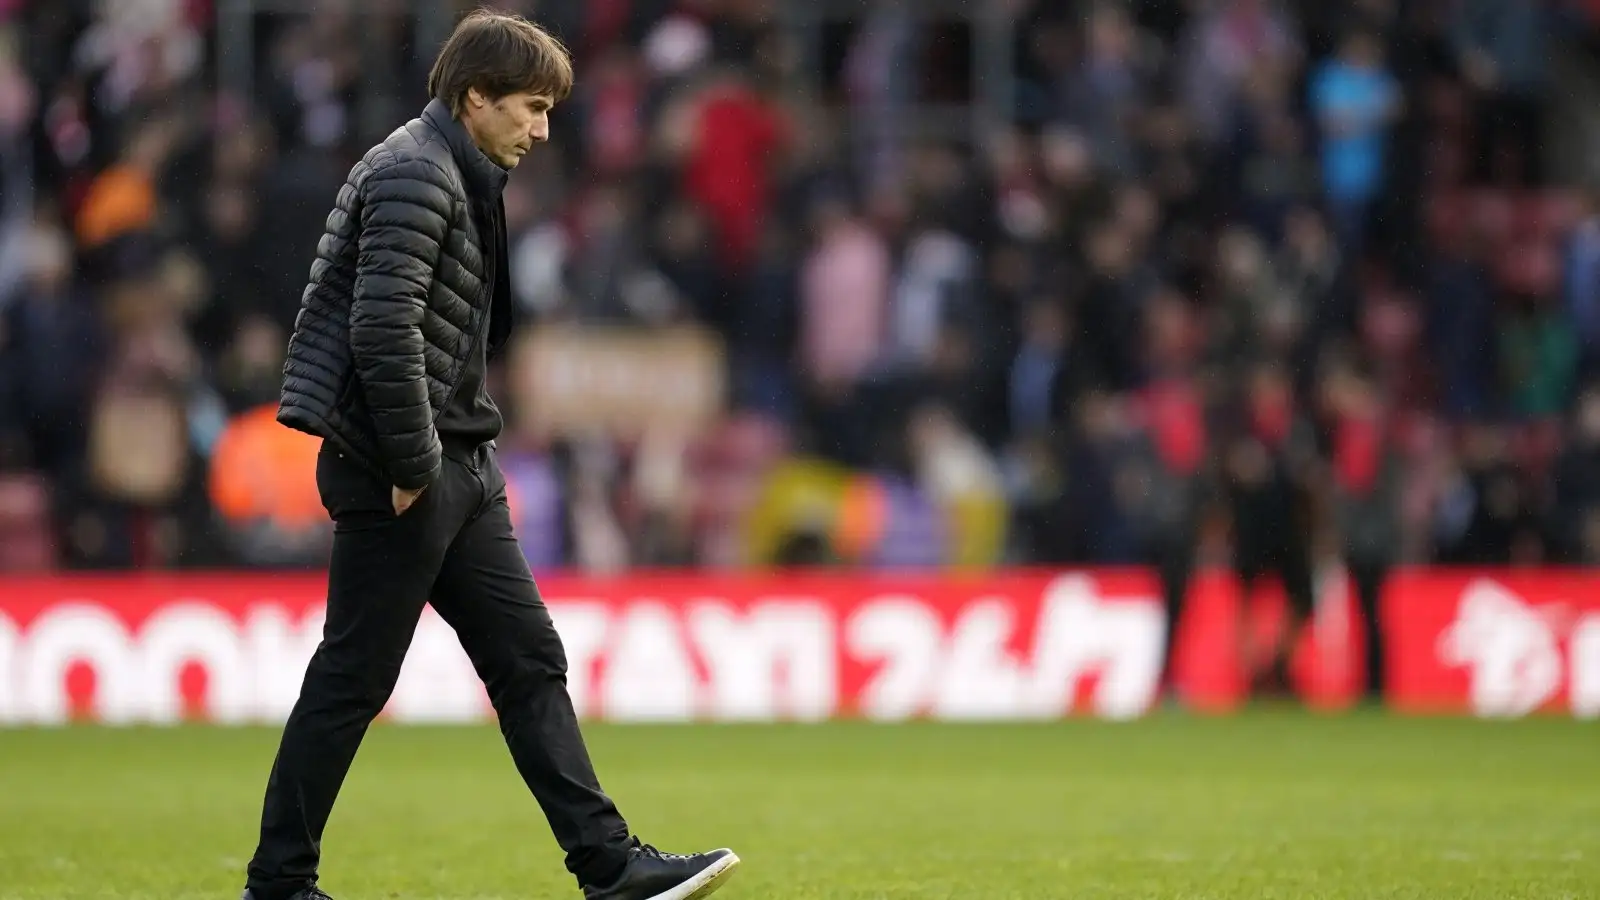 Tottenham boss Antonio Conte looks dejected as he walks across the pitch